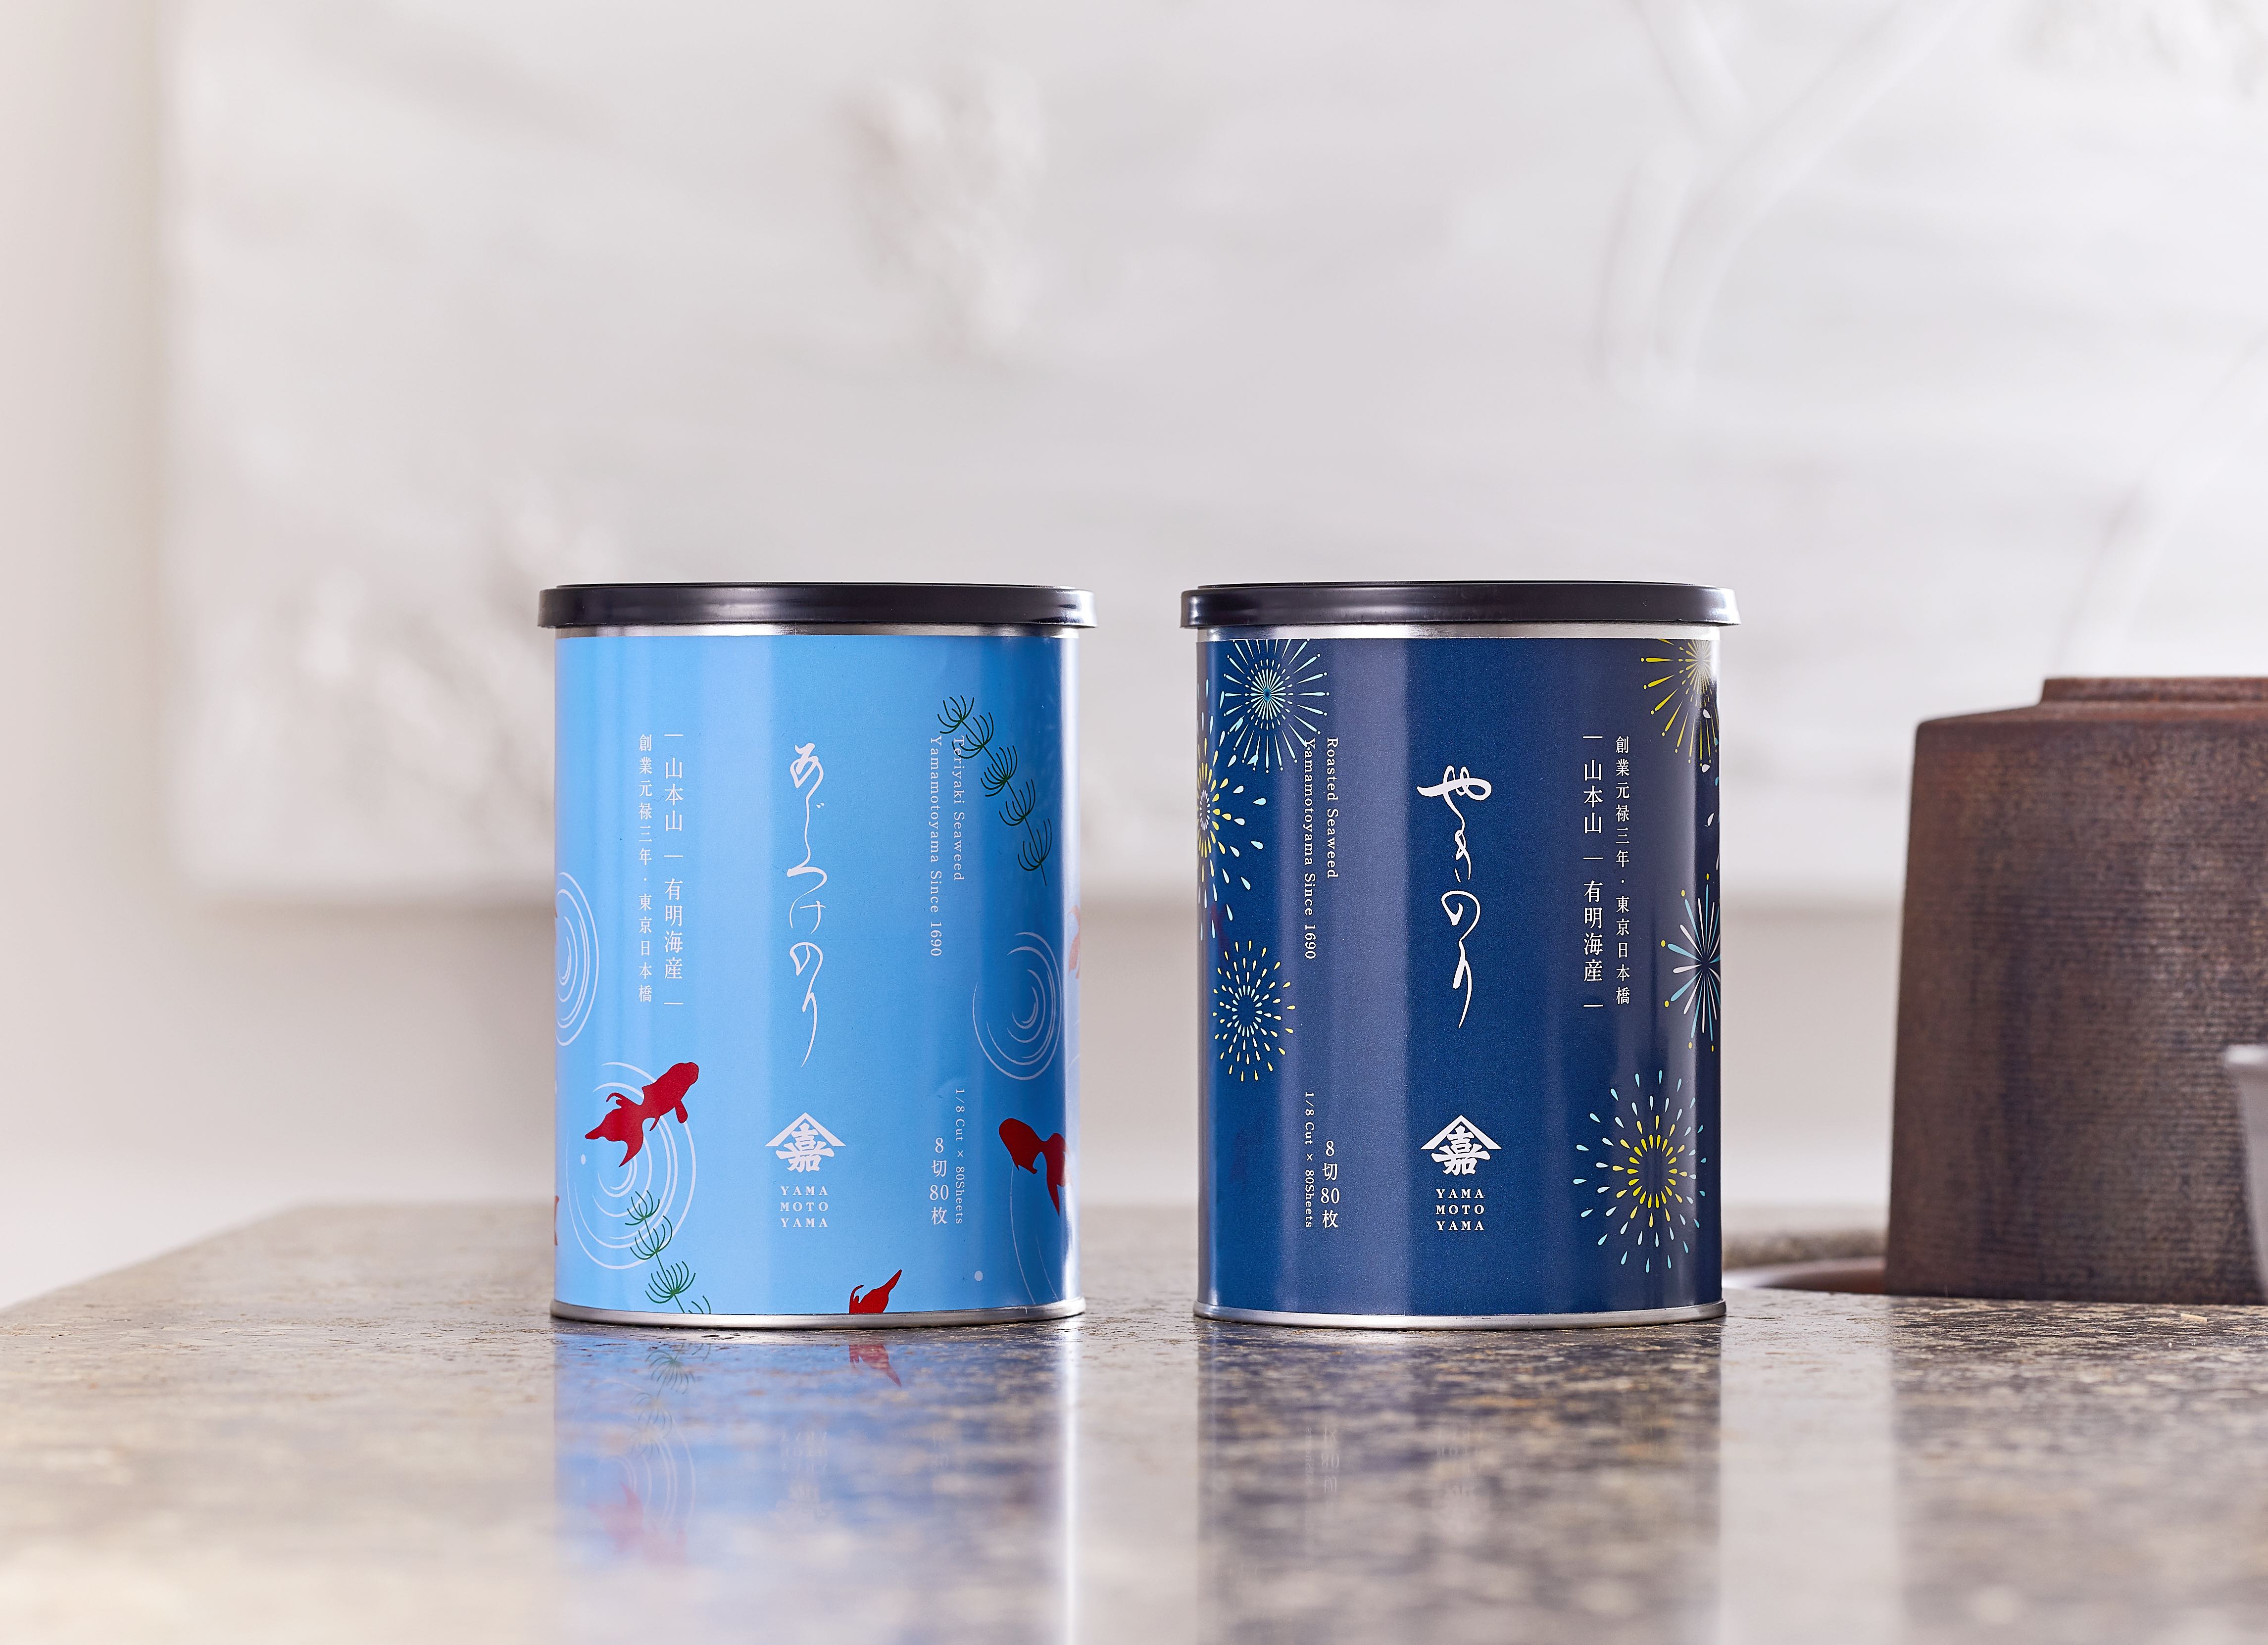 山本山 夏季限定デザイン缶の焼海苔と味付海苔を発売 株式会社山本山のプレスリリース